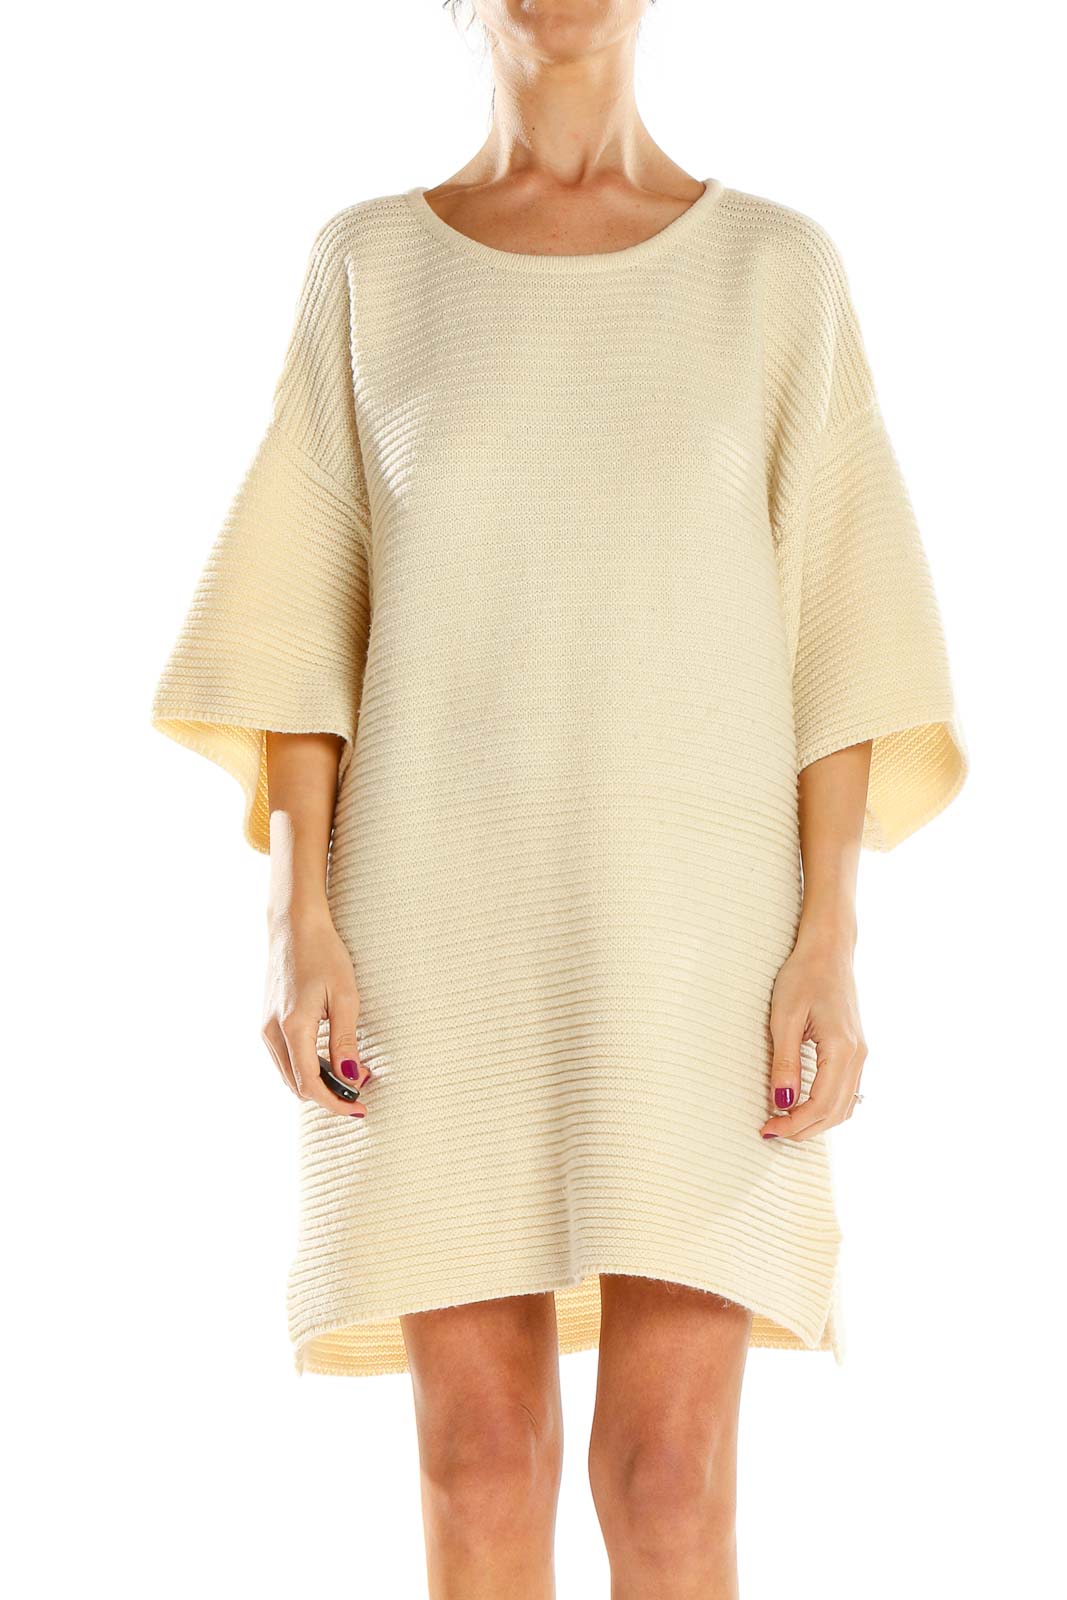 Beige Knit Sweater Dress Front